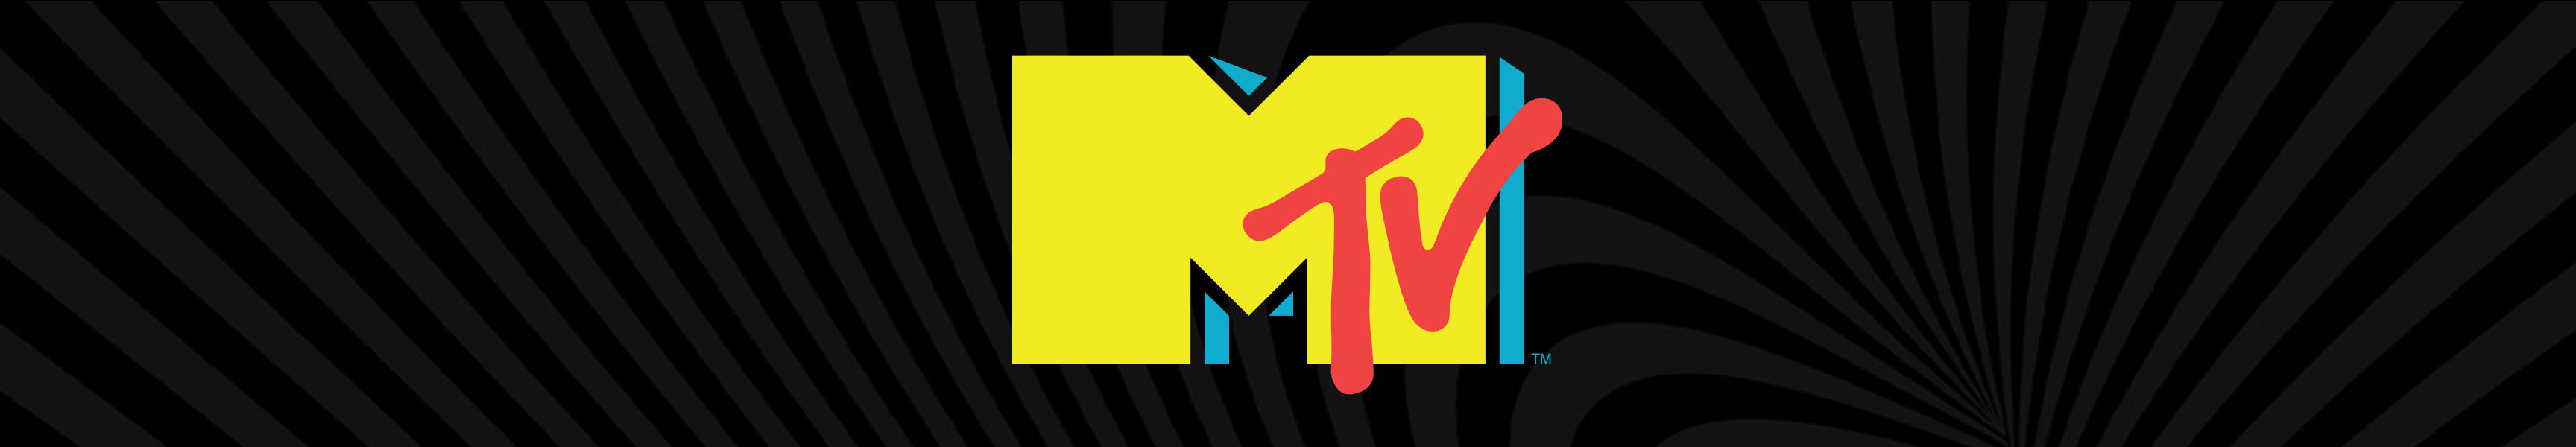 Trajes de baño MTV